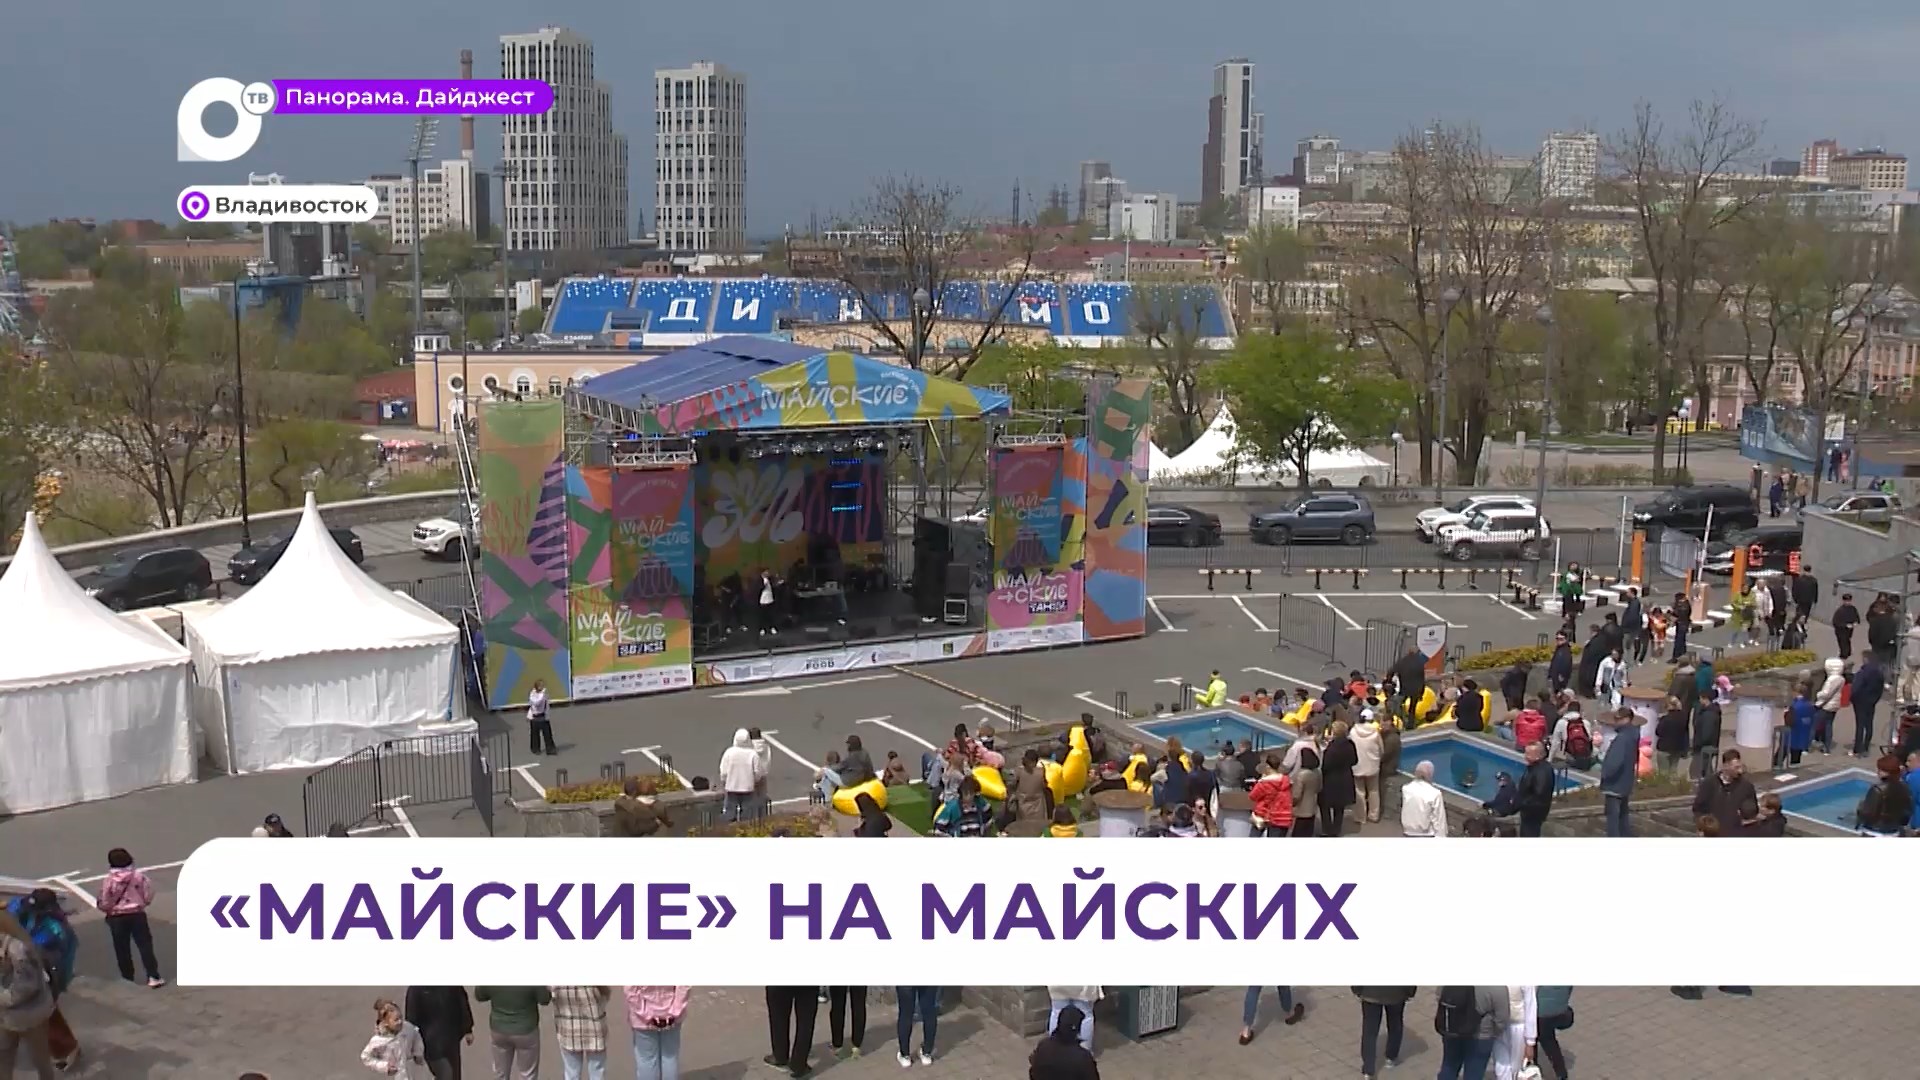 Во Владивостоке стартовал международный фестиваль уличной культуры «Майские»